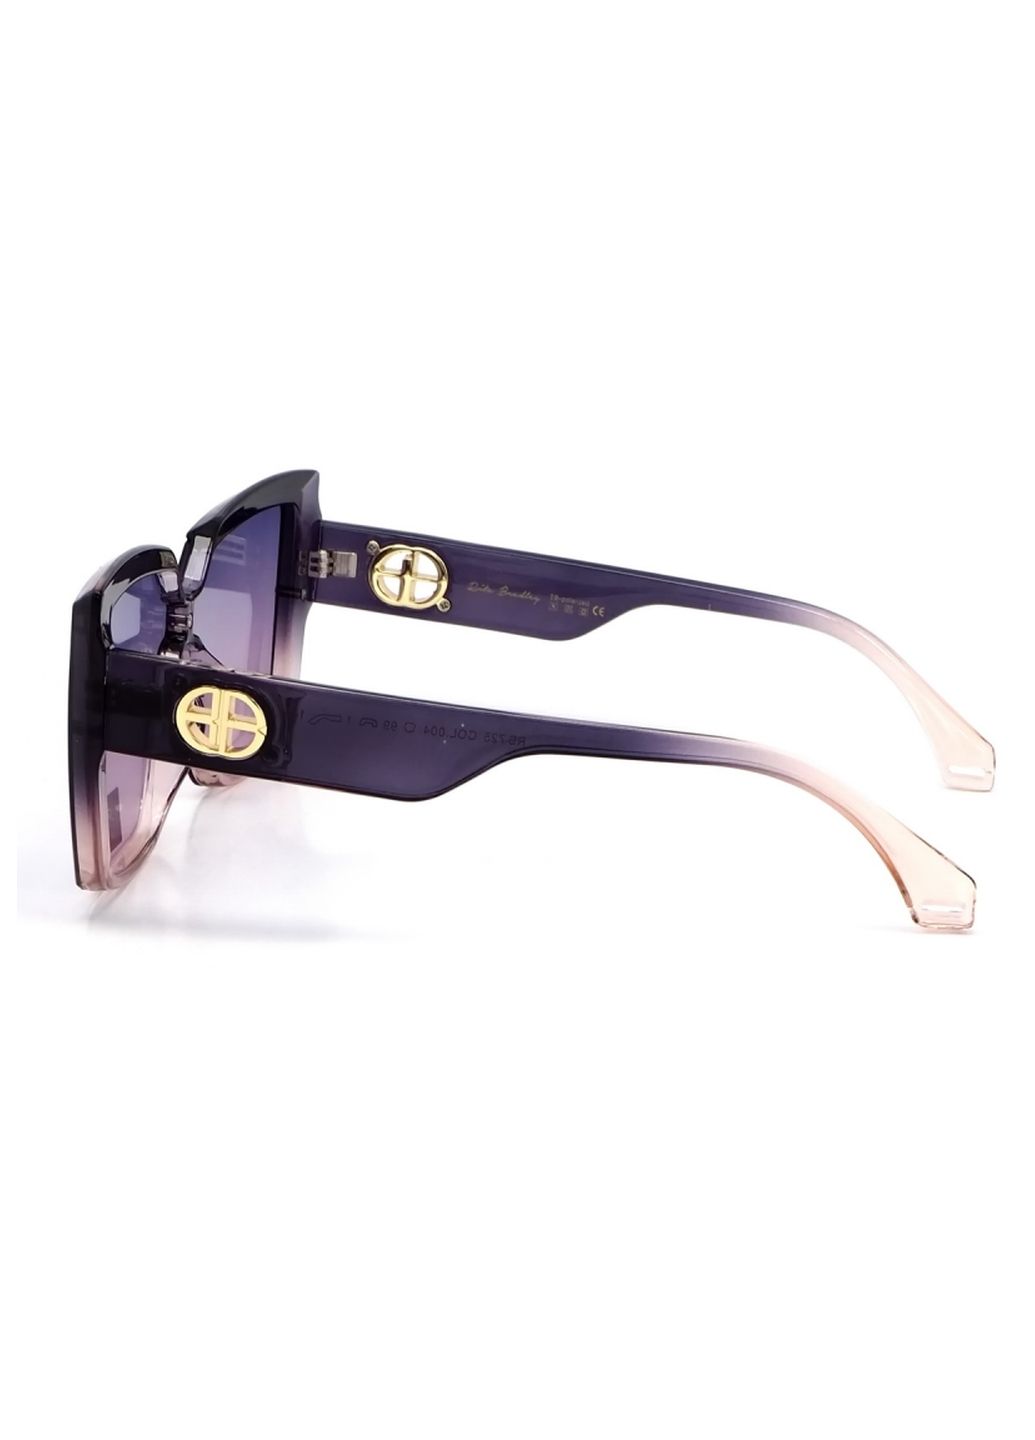 Купить Женские солнцезащитные очки Rita Bradley с поляризацией RB725 112050 в интернет-магазине